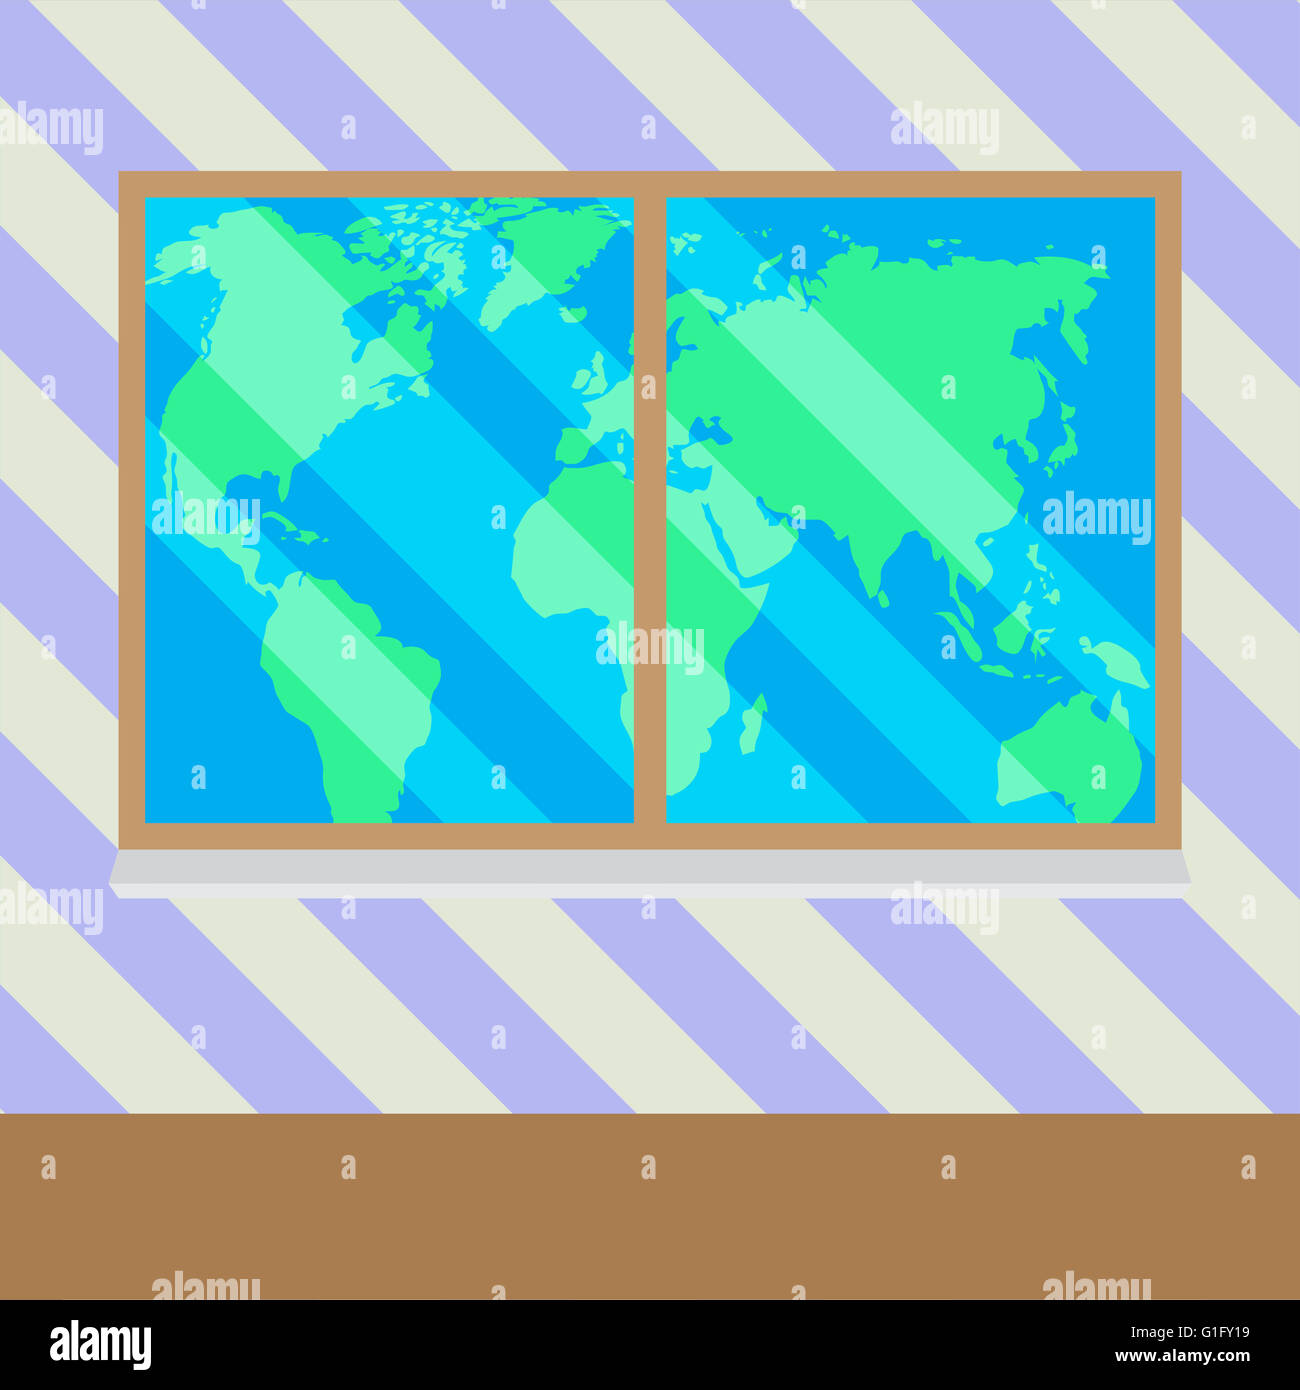 Karte von Welt von Fenster. Geschäft Fenster und Welt global Screen transparent. Flaches Design Vektorgrafik Stockfoto